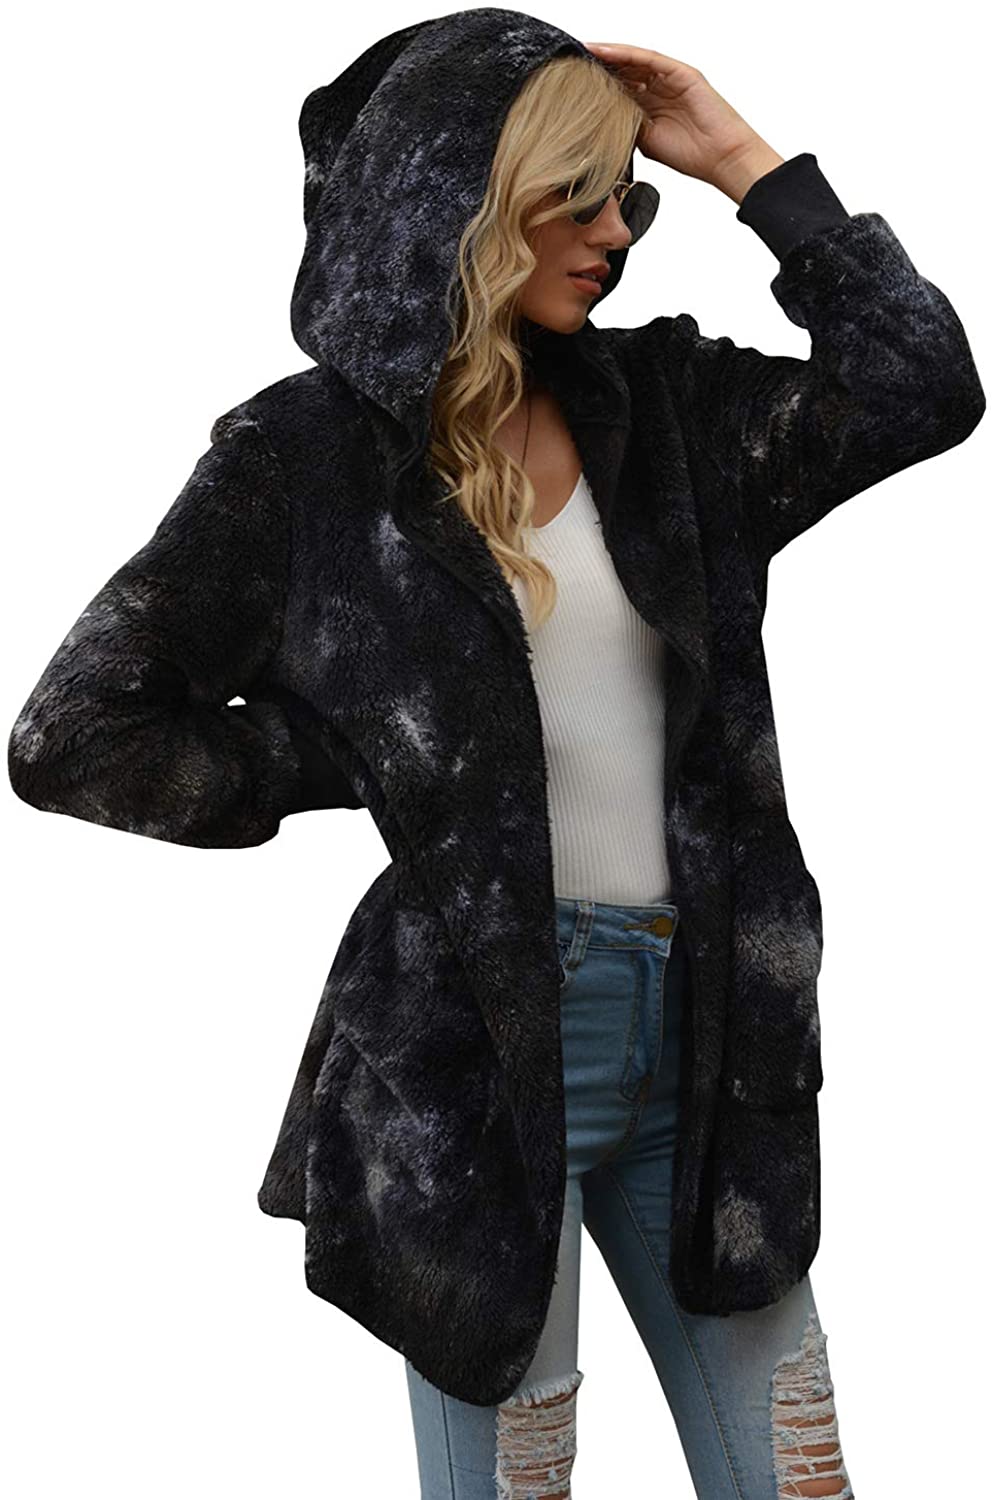 SENSERISE Womens Fuzzy Fleece Long Sleeve Open Front Hooded Jacket Cardigan Coat Oversized Winter Outwear with Pockets 